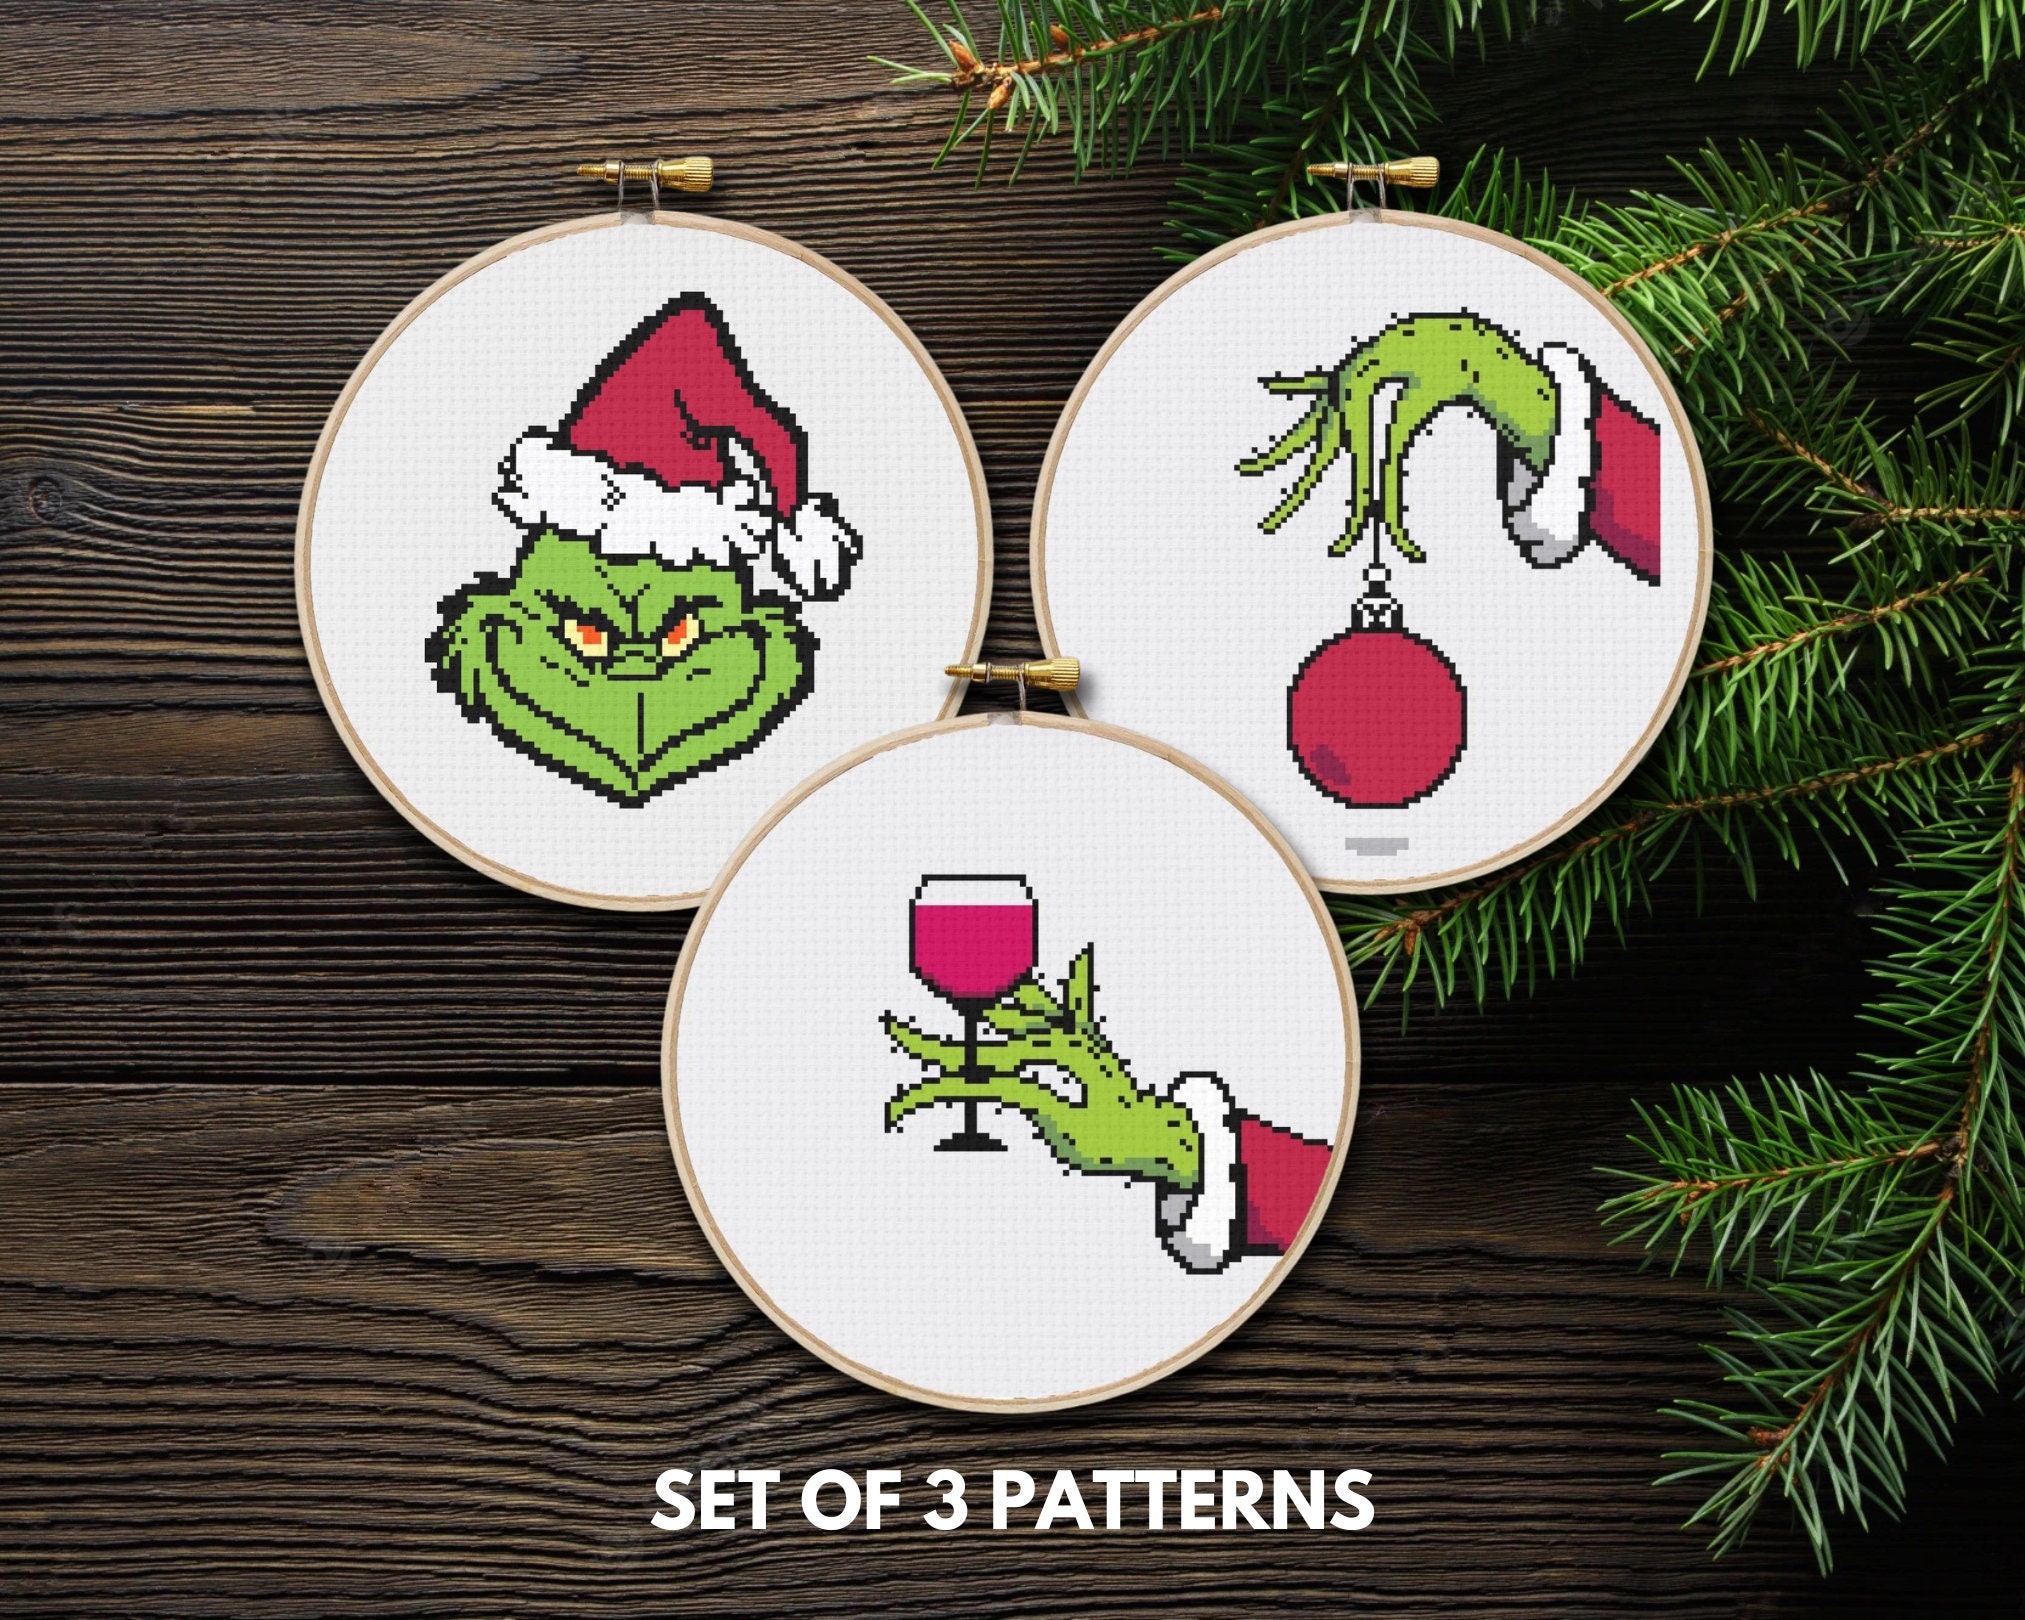 Set of 3 Christmas cross stitch kits